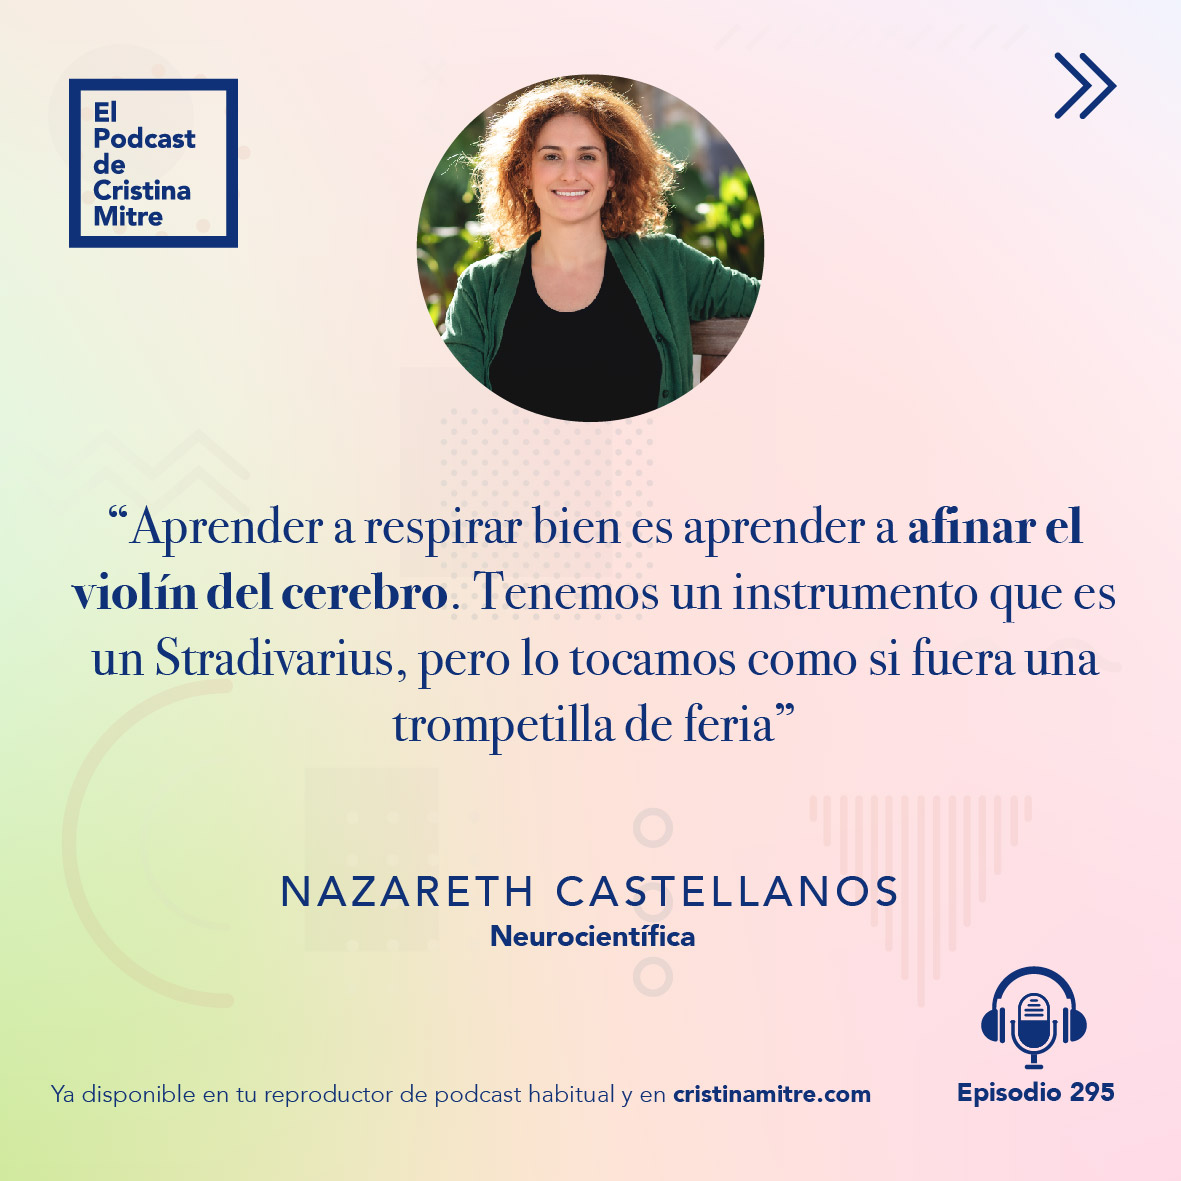 el podcast de cristina mitre Nazareth castellanos respirar bien